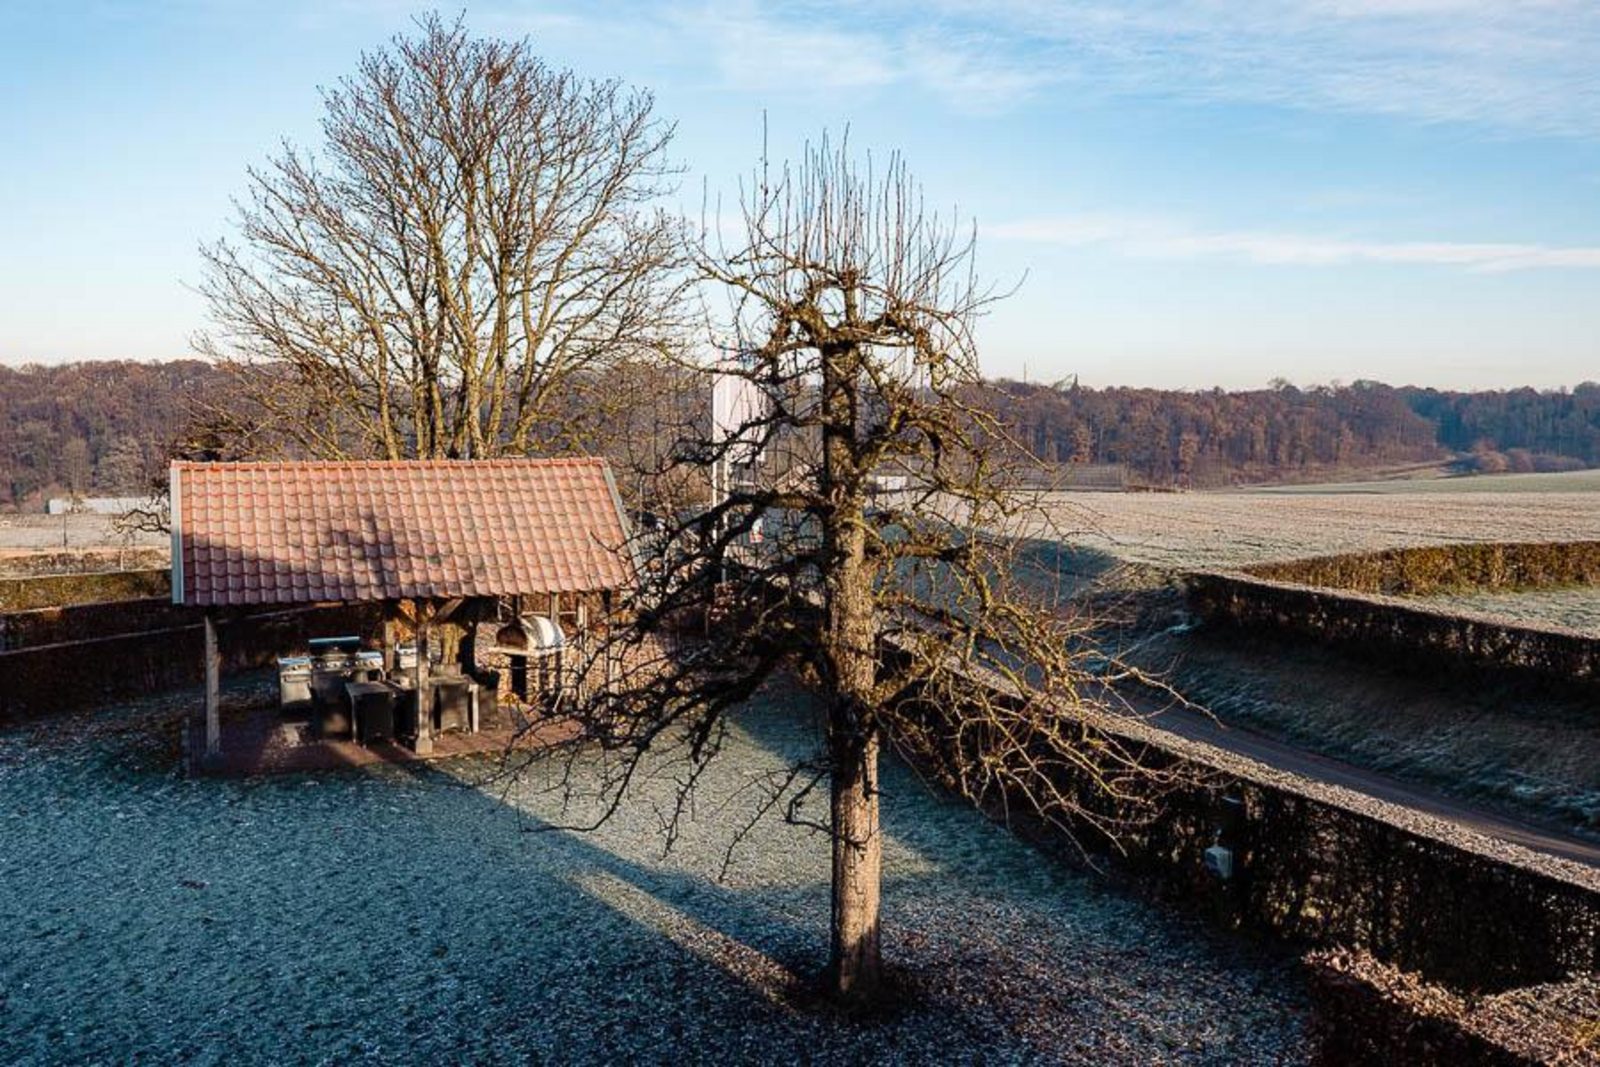 Landgoed St. Geertruid Mirabelle - luxe vakantiehuis met hottub en sauna in Limburg